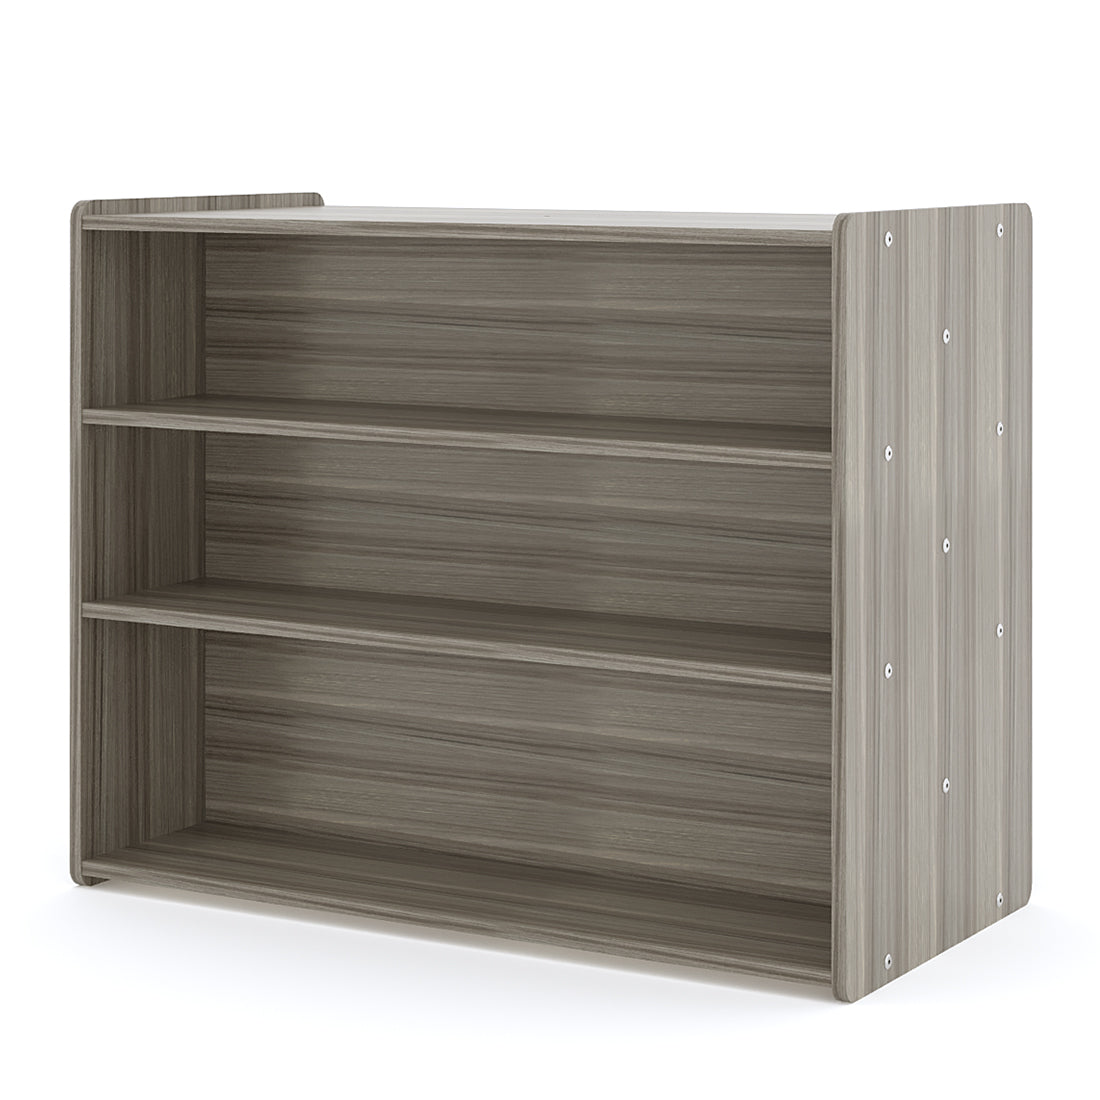 School Age Shelf Storage- Double Sided